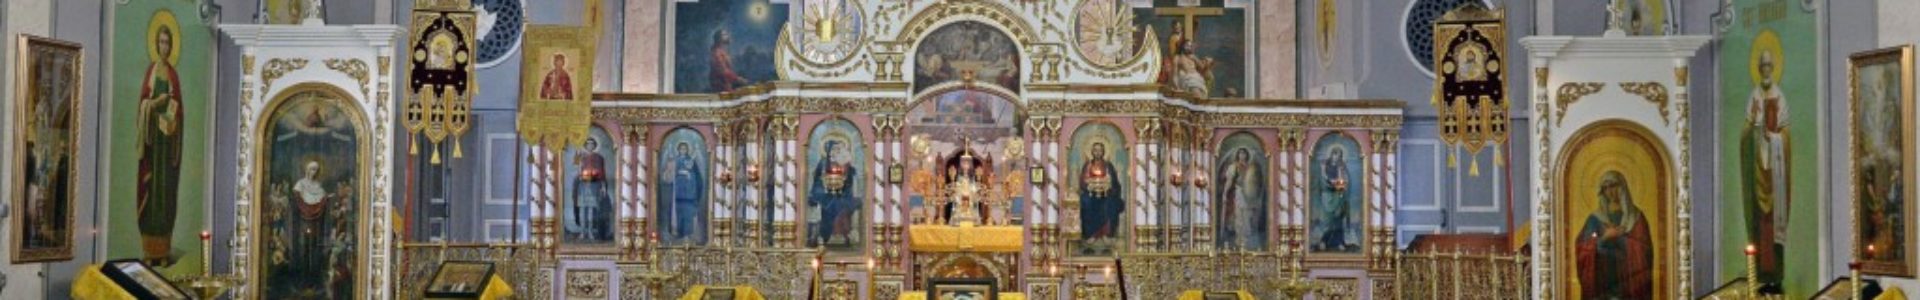 Святейший Патриарх Кирилл наградил епископа Ейского Германа орденом преподобного Серафима Саровского III степени